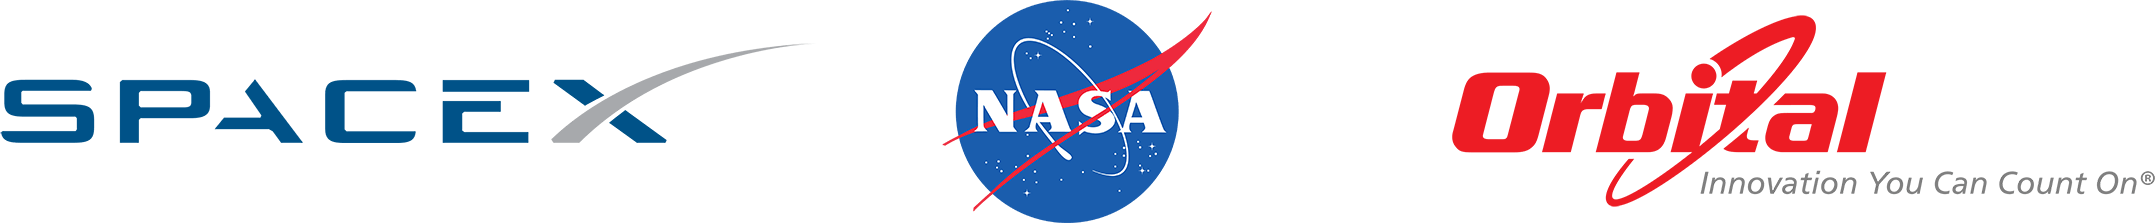 Cots NASA Logo - COTS: Final Report